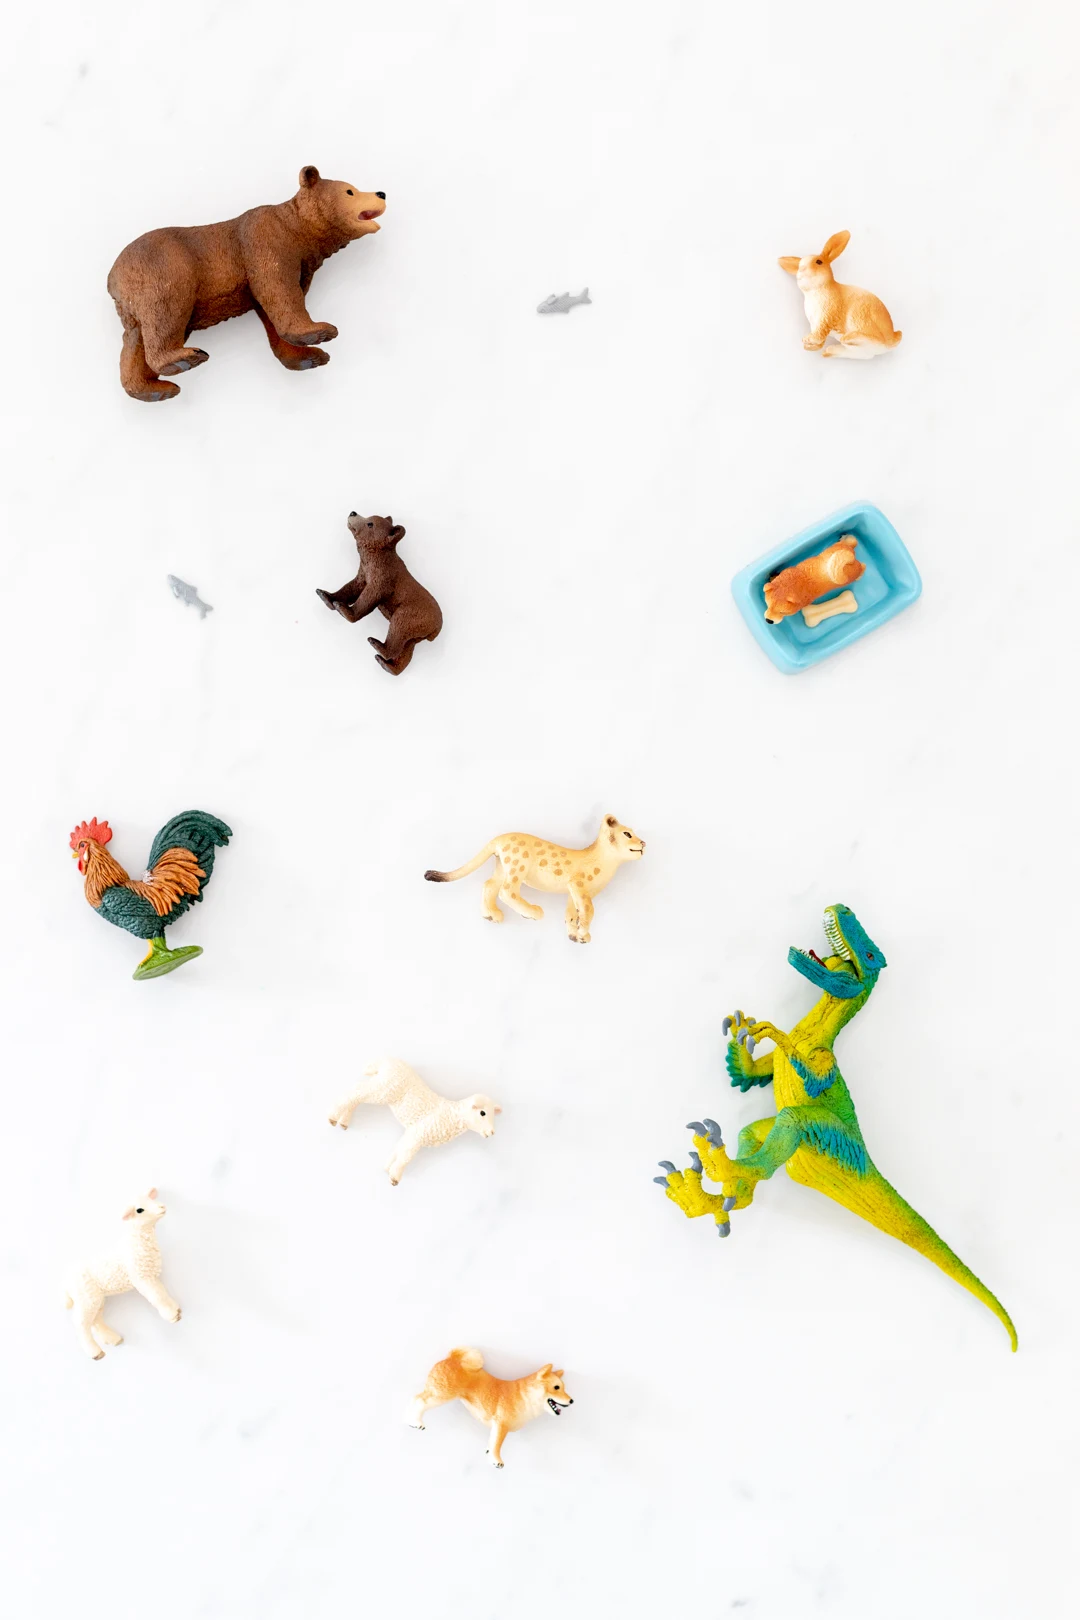 Animal figurines from bears to dinos